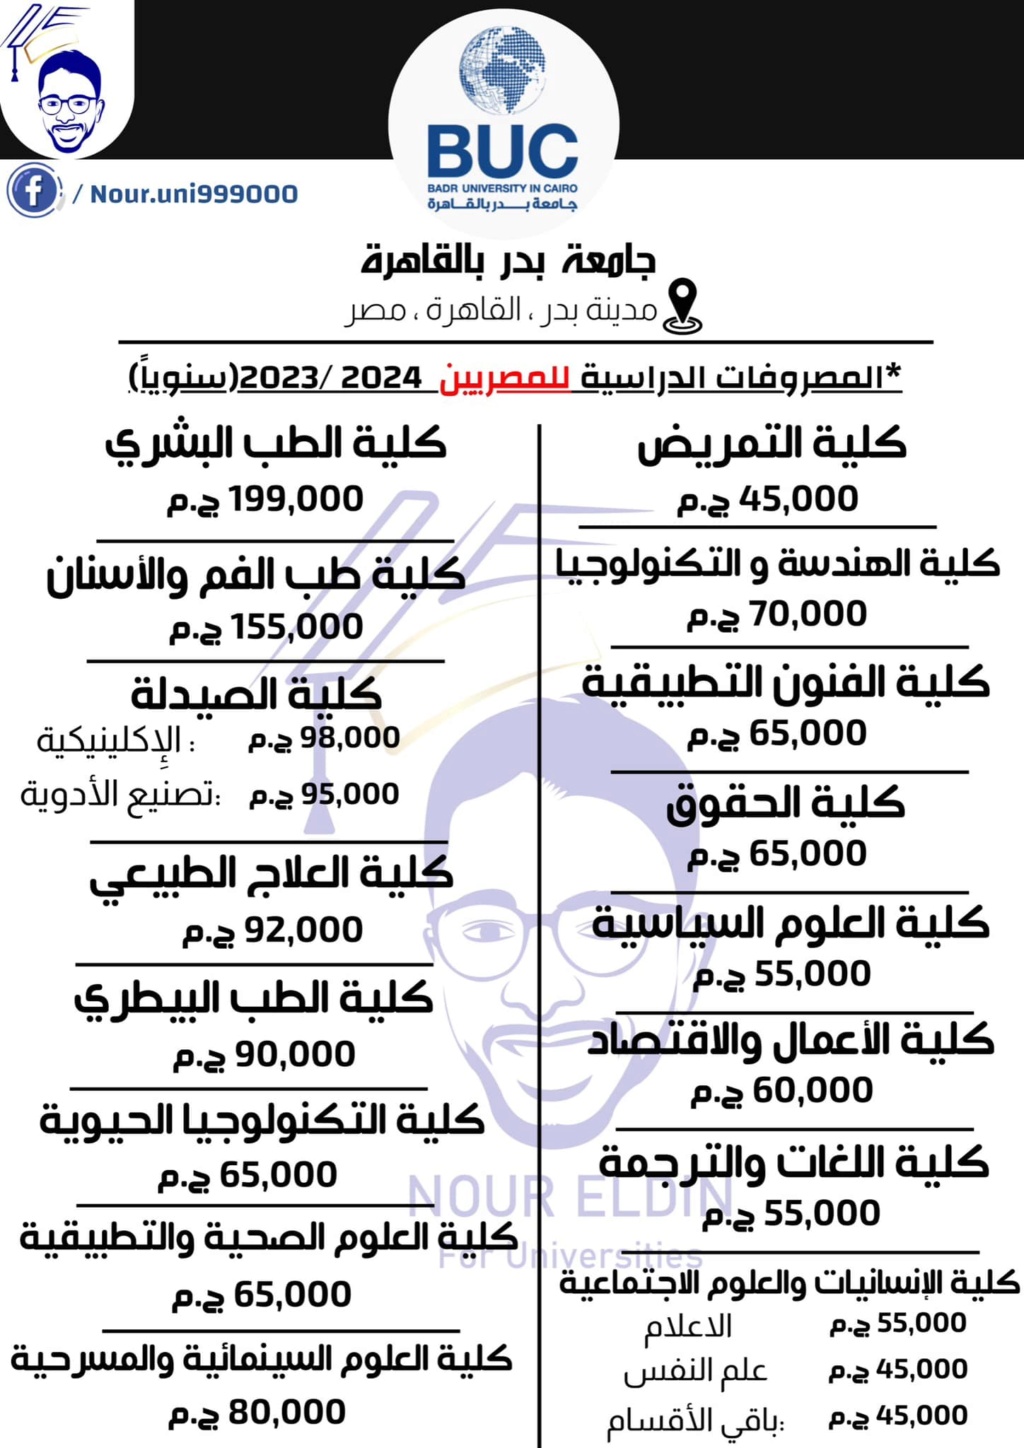 مصروفات جامعة بدر بالقاهرة للعام ٢٠٢٣ / ٢٠٢٤ 31104